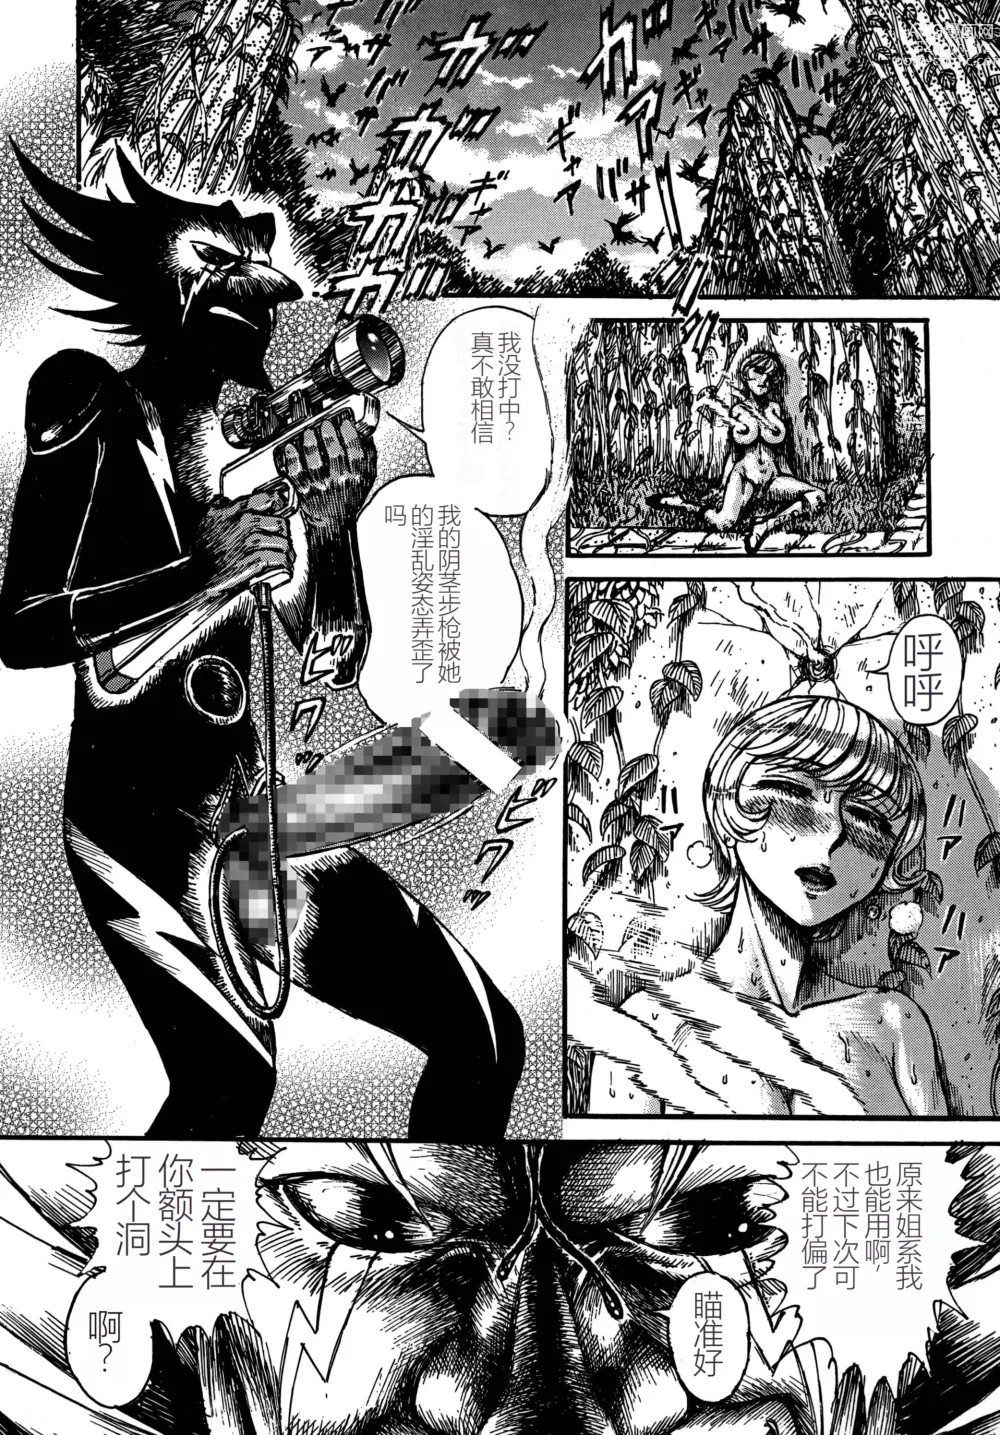 Page 54 of doujinshi Youjinbou Otaku Matsuri 5